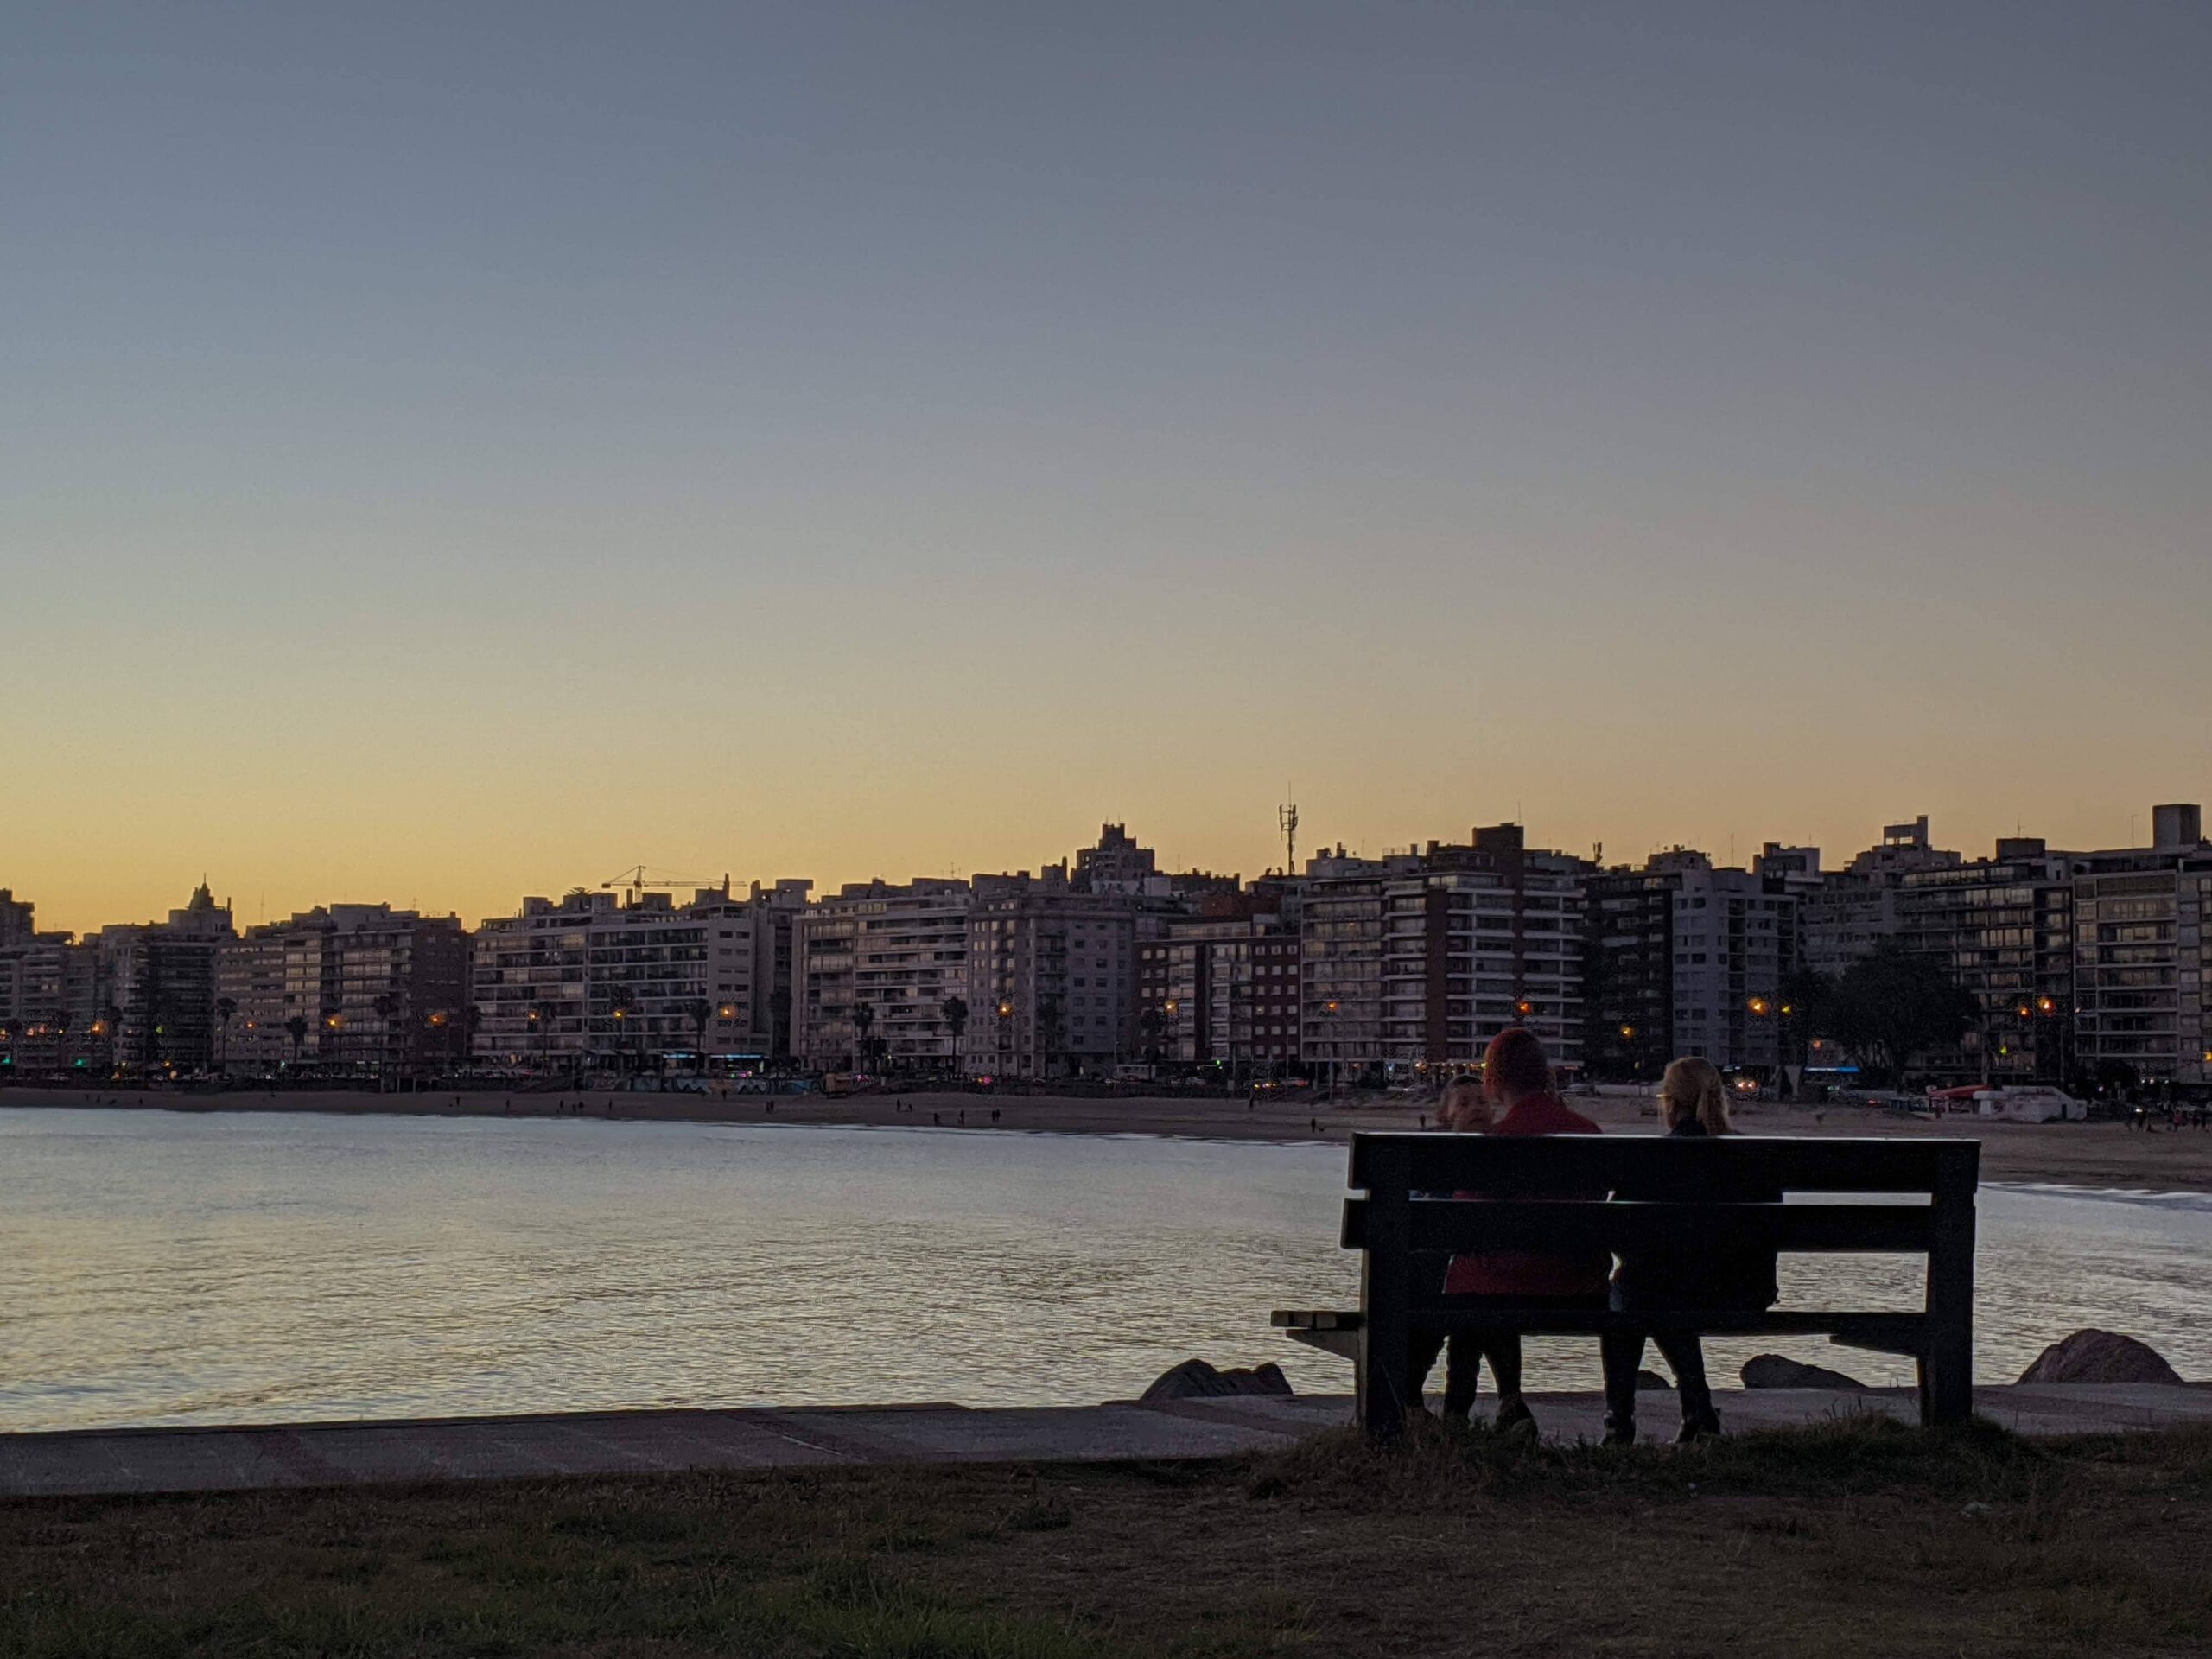 Pessoas sentadas em um banco de frente para o mar em Montevideo, aos fundos é possível ver alguns prédios e o dia está se pondo.